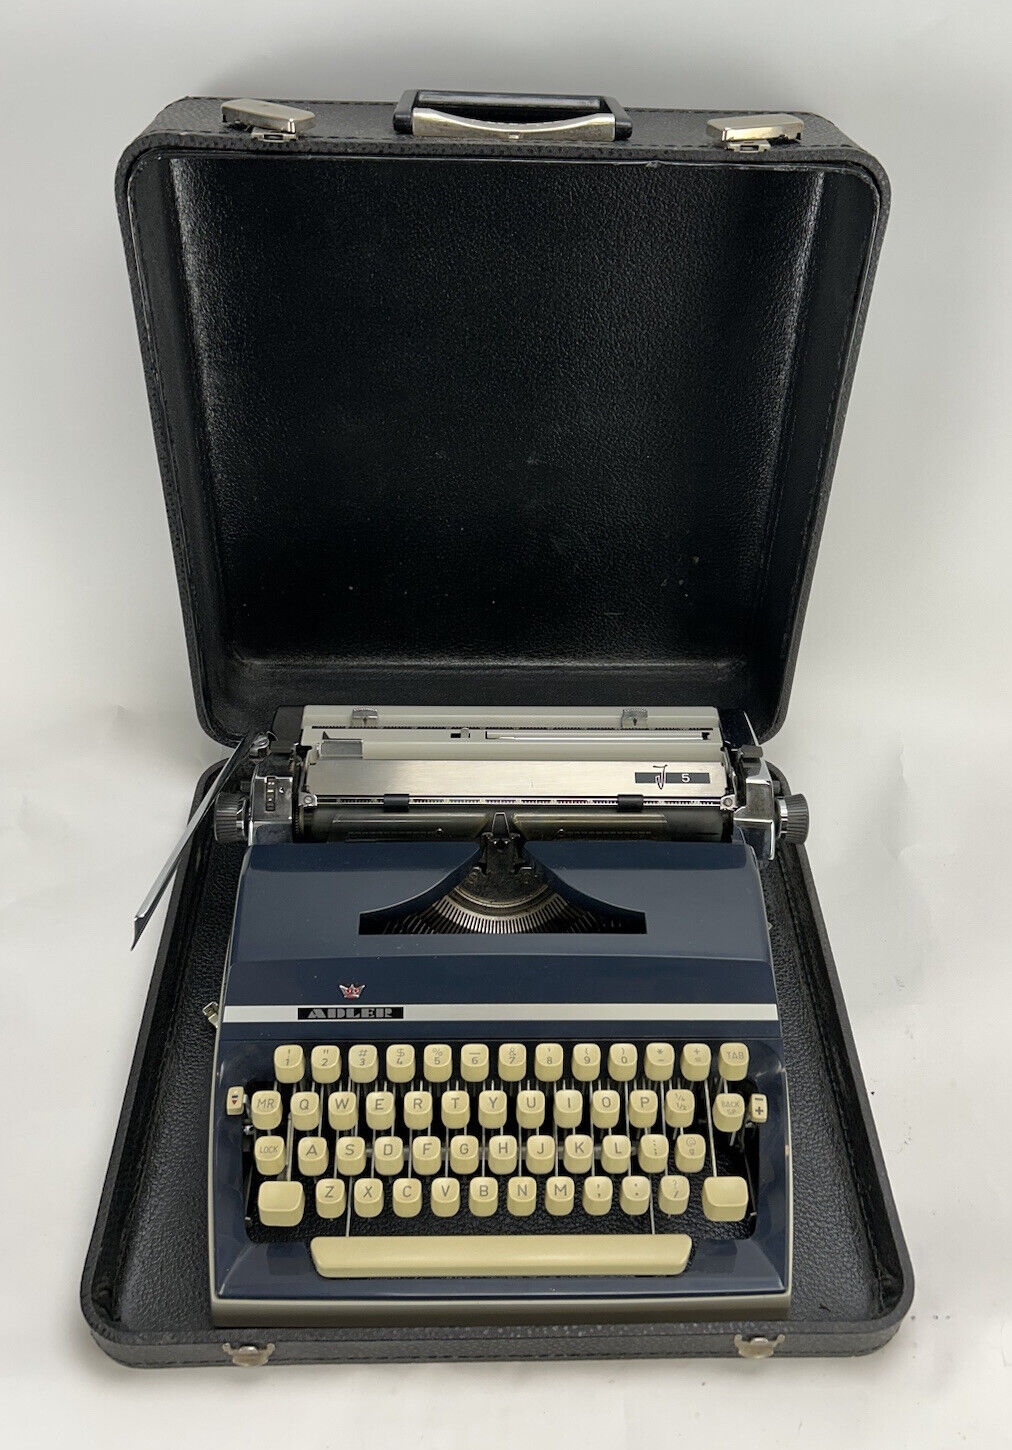 Vintage Adler J5 Manual Portable Typewriter with Case